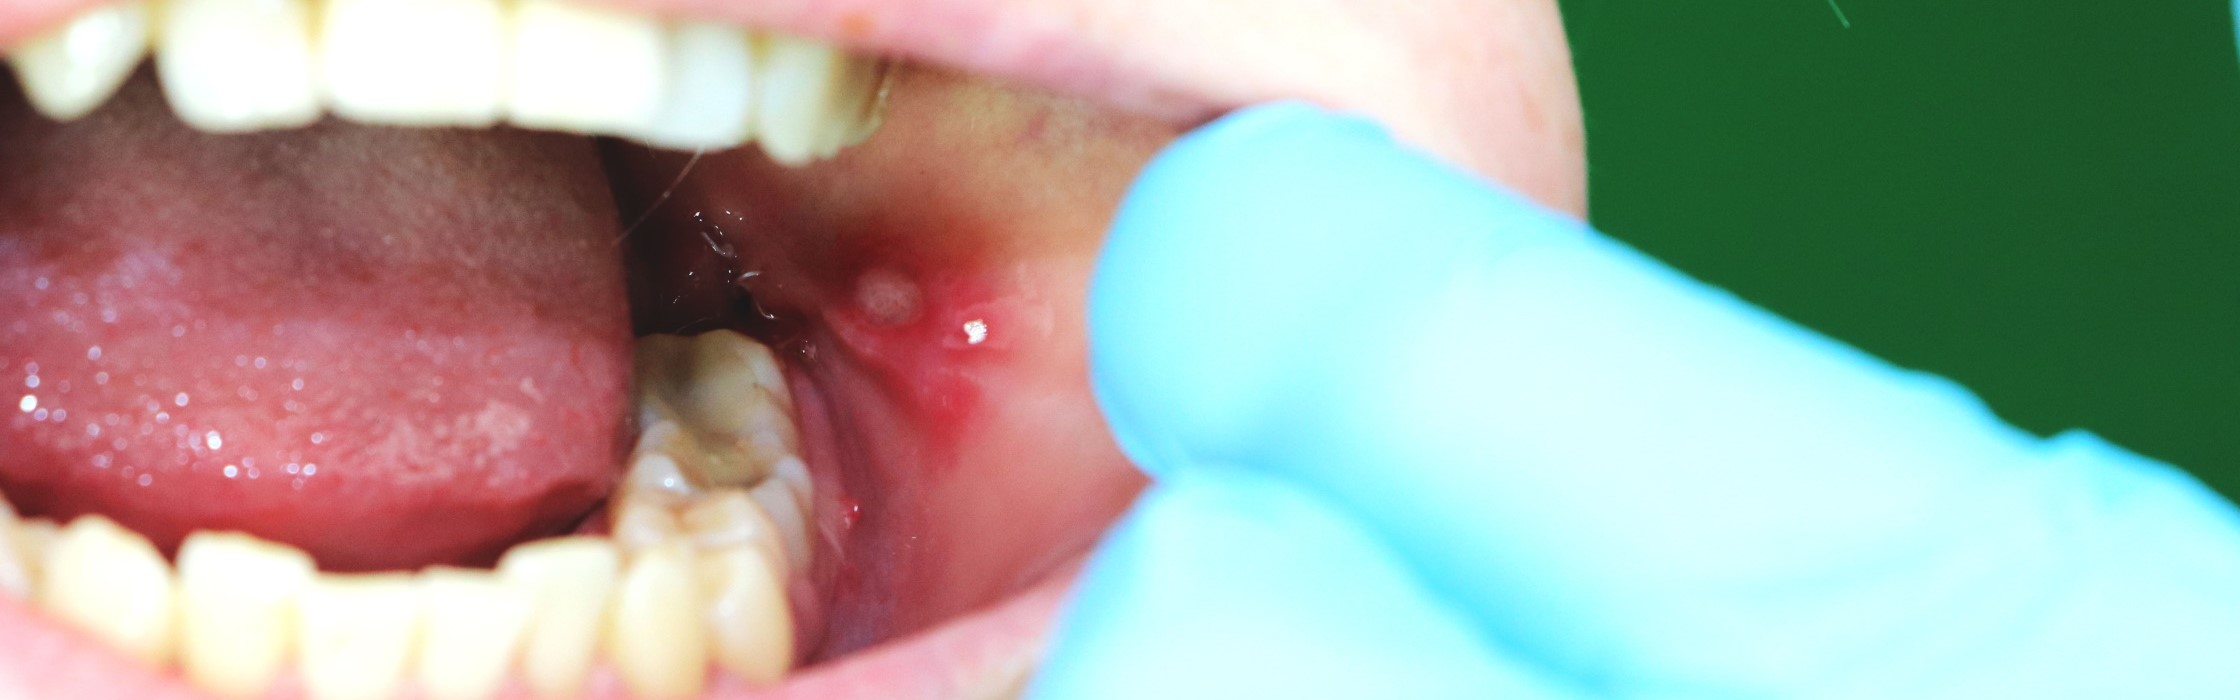 Mundfäule: Wenn Herpes die Mundschleimhaut befällt